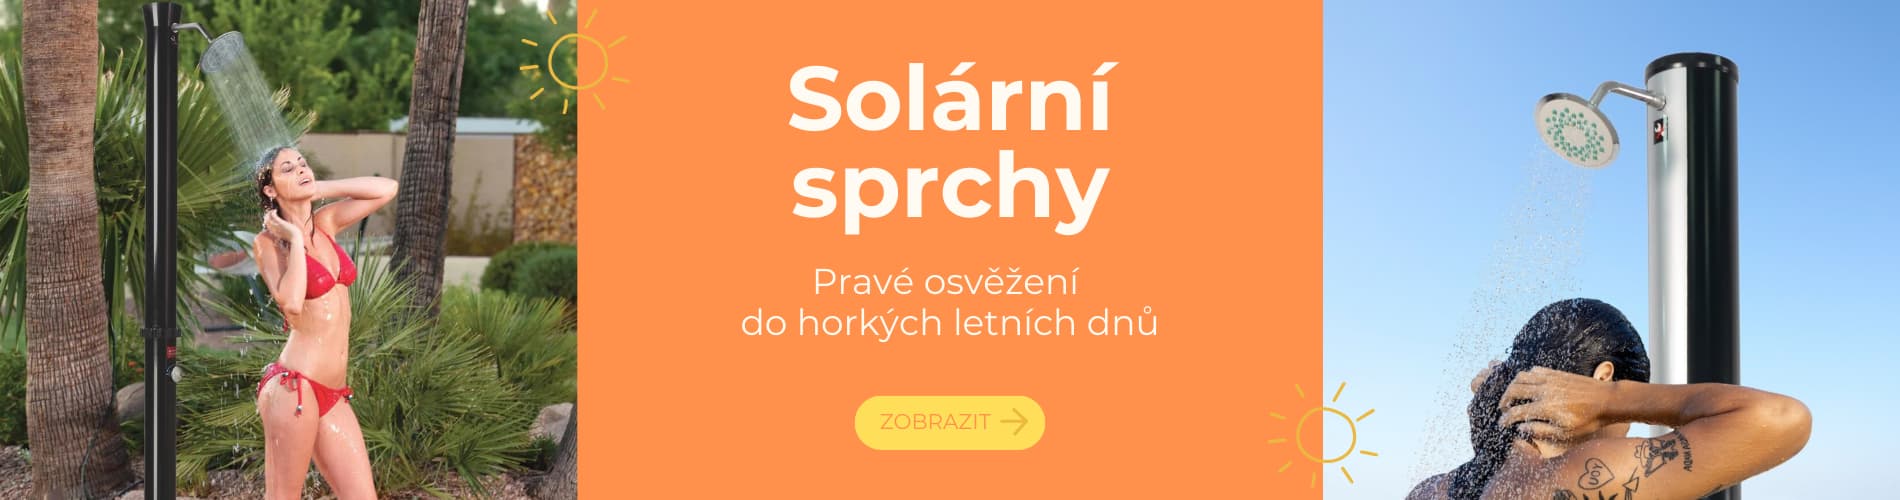 Solární sprchy